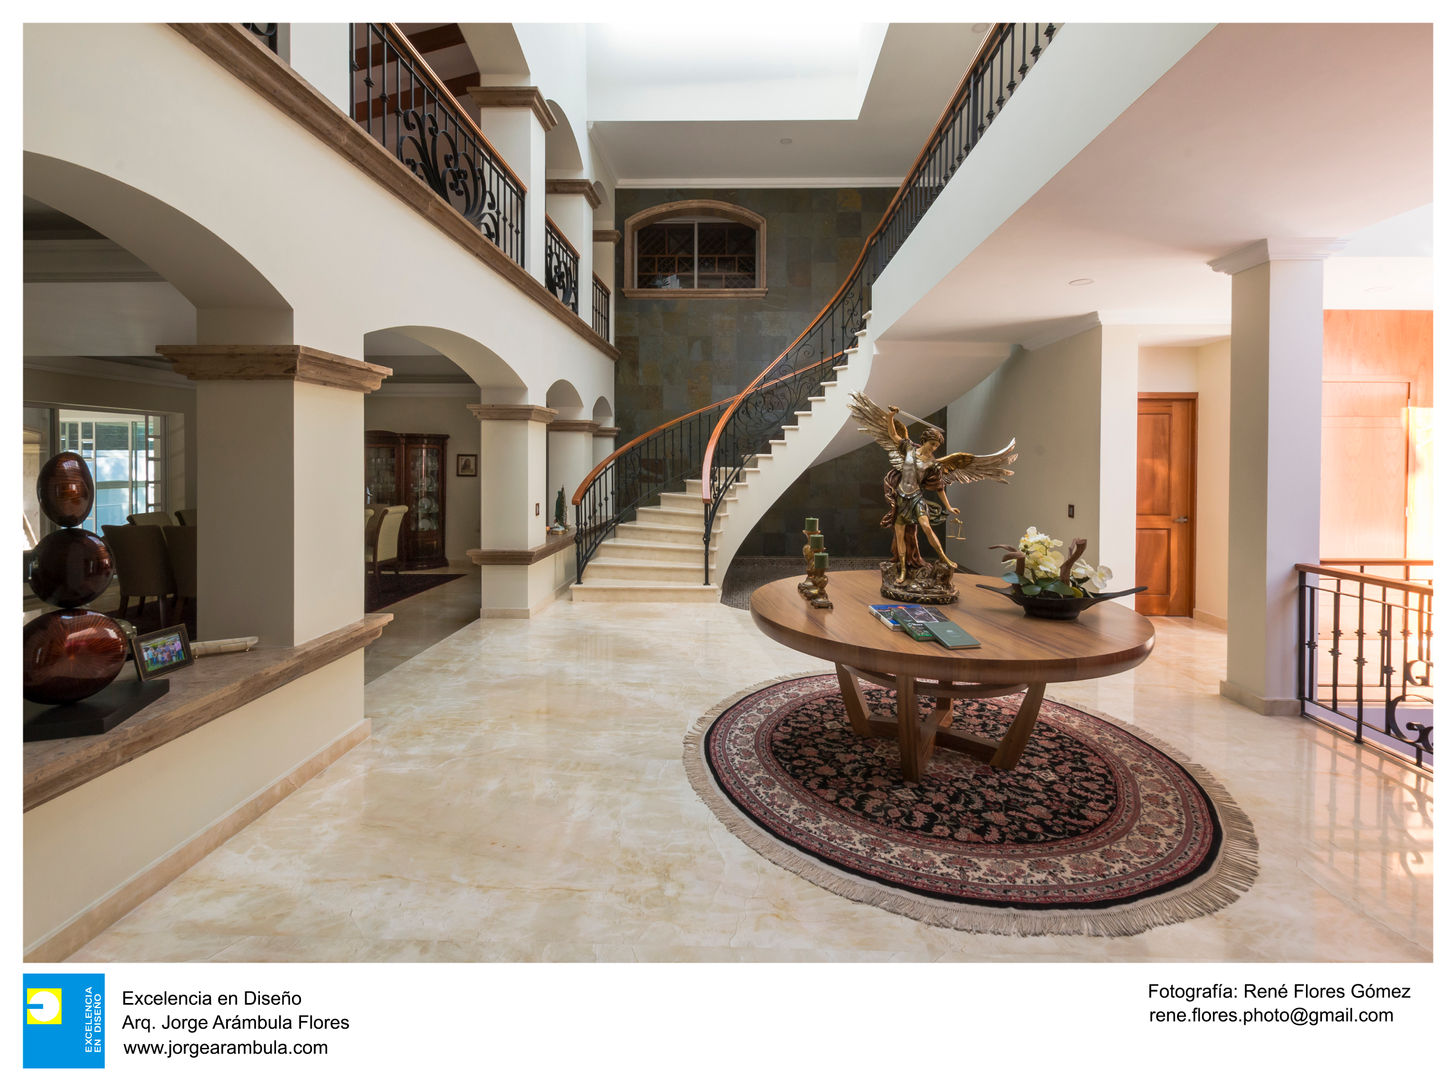 Casa Alberta, Excelencia en Diseño Excelencia en Diseño Stairs Concrete